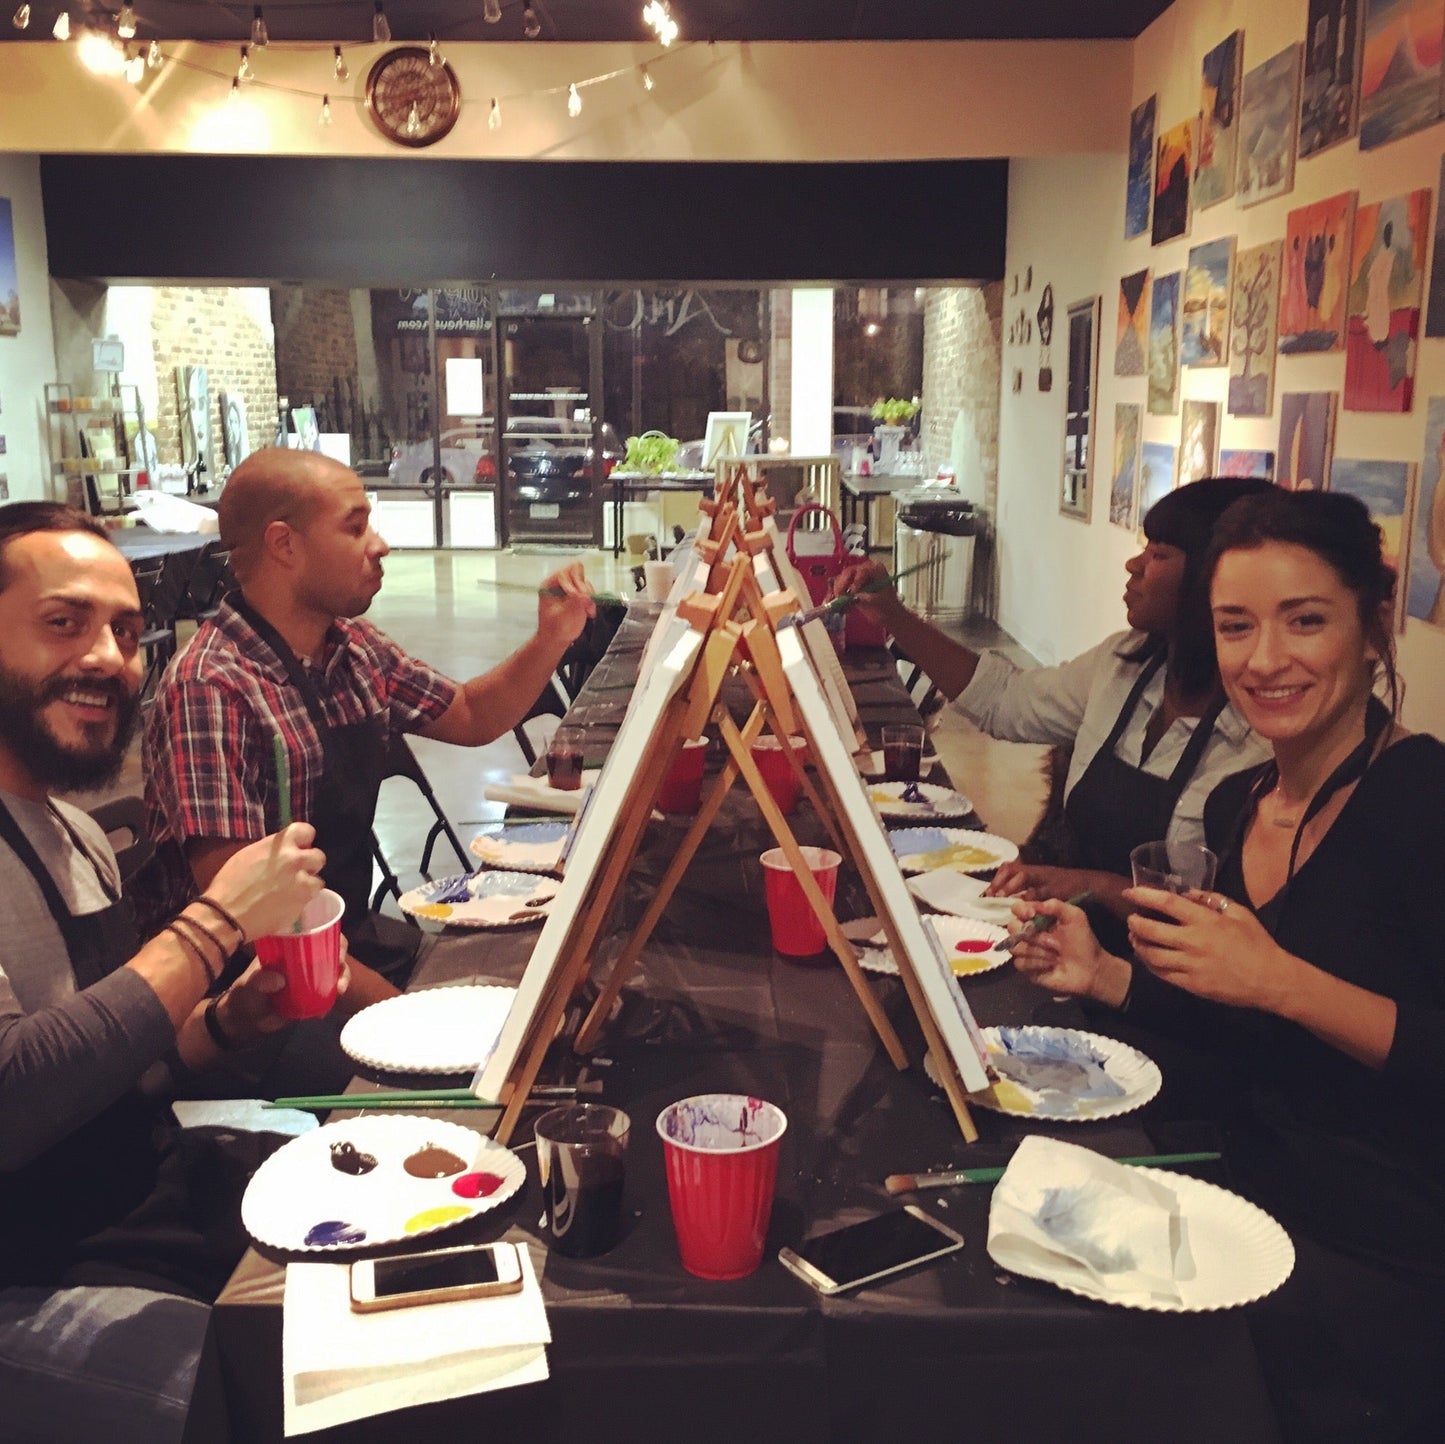 Thu, Oct 27th, 4-6P “Art & Science: Acrylic Pour” Public Houston Kids Paint Class